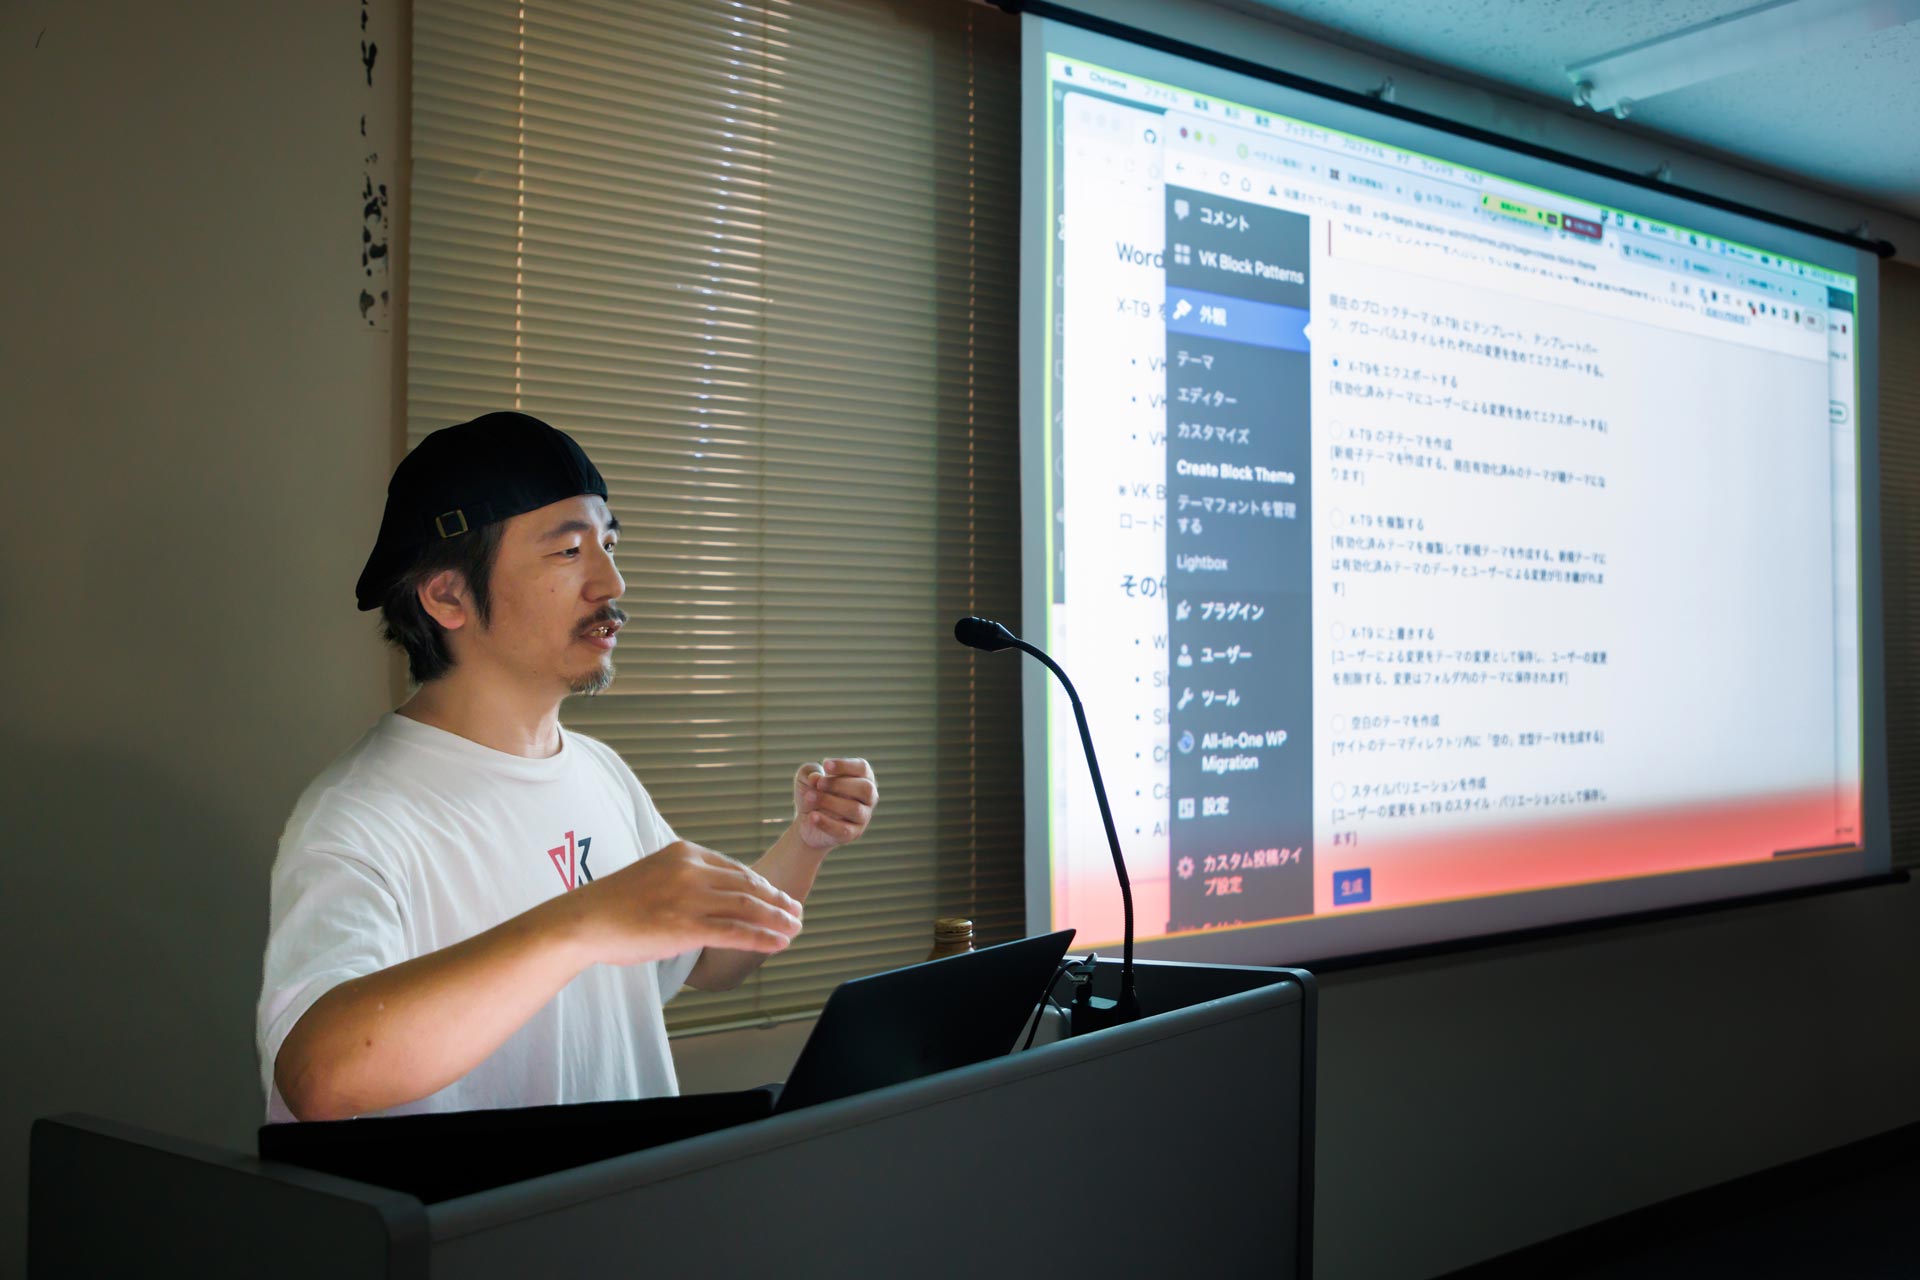 VWS勉強会 東京開催「WordPress 最新機能フルサイト編集での制作実演」振り返り